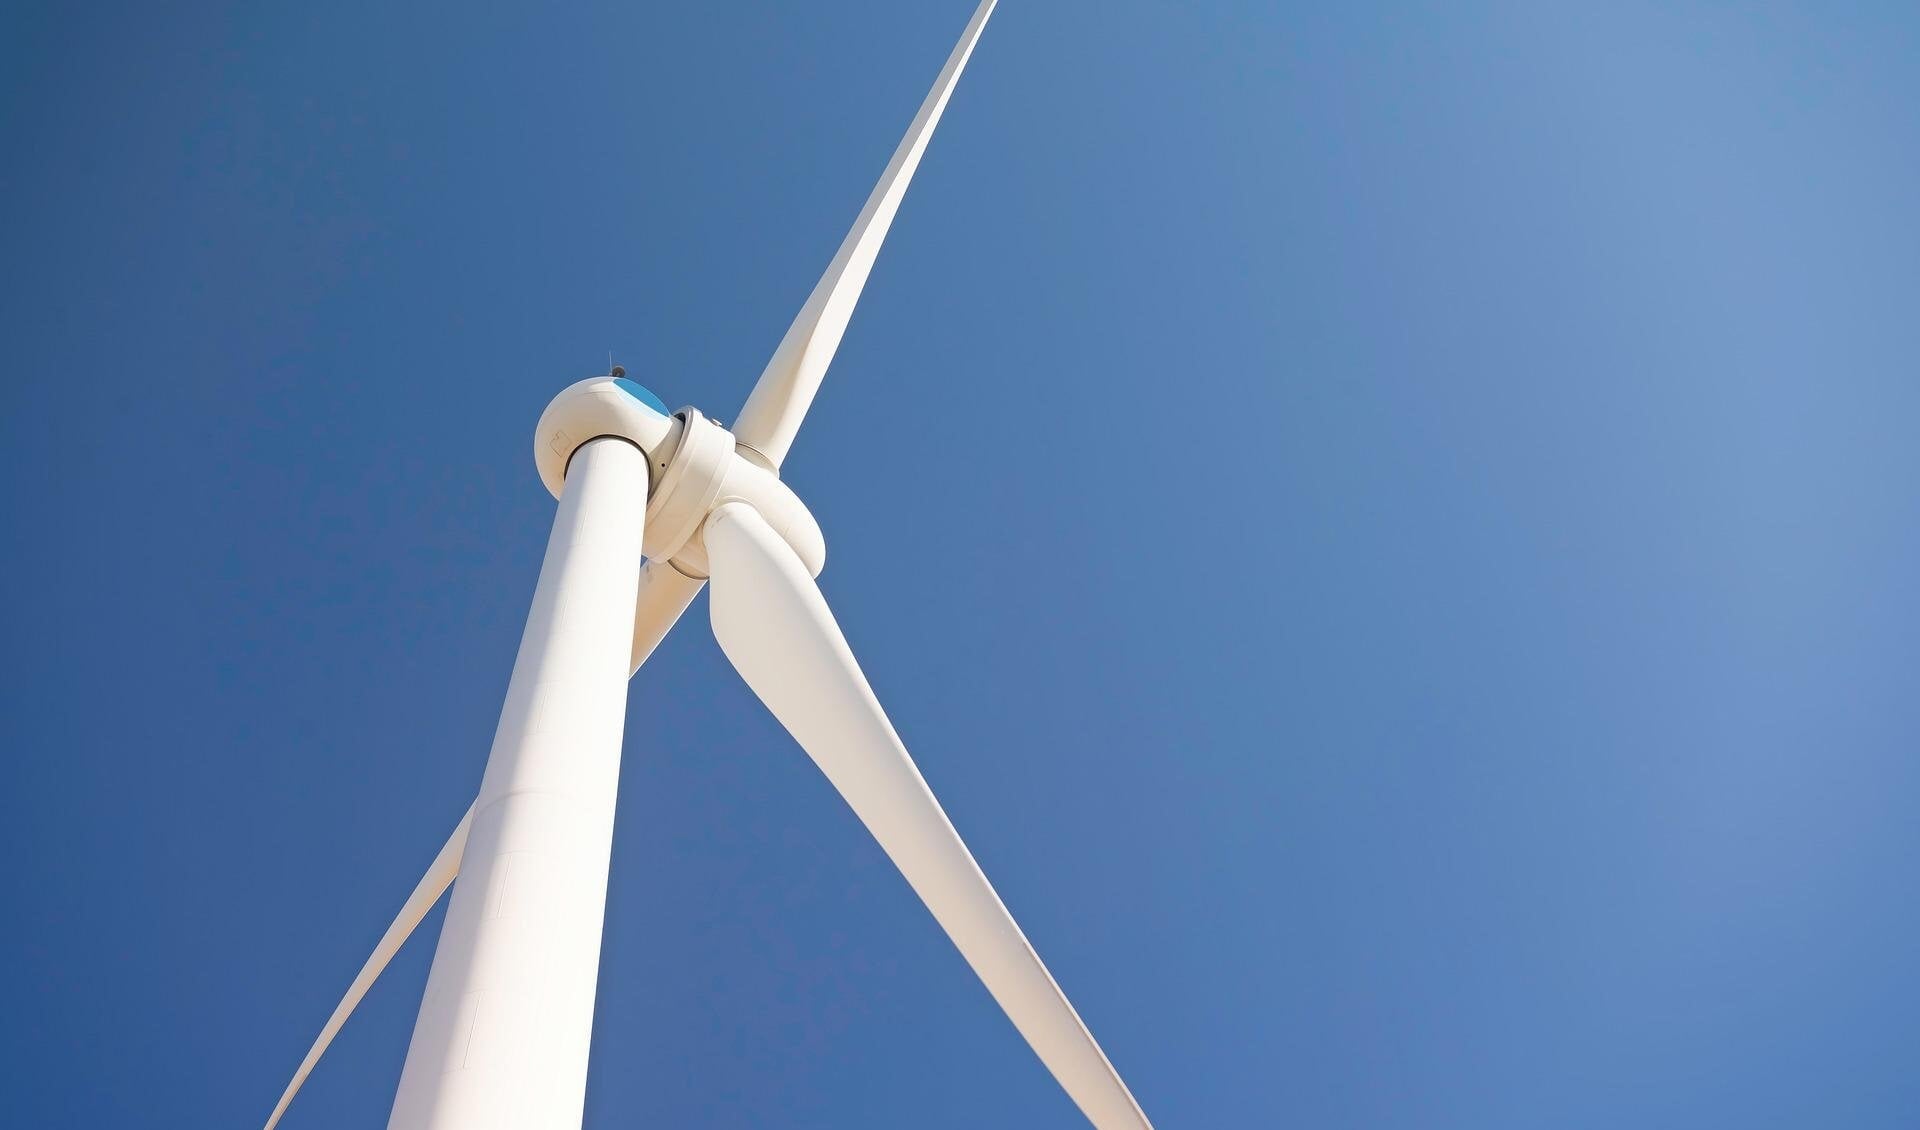 Wind als energiebron kan door de druk op de energiemarkt en geopolitieke ontwikkelingen niet bij voorbaat meer worden uitgesloten. (foto: Pixabay)